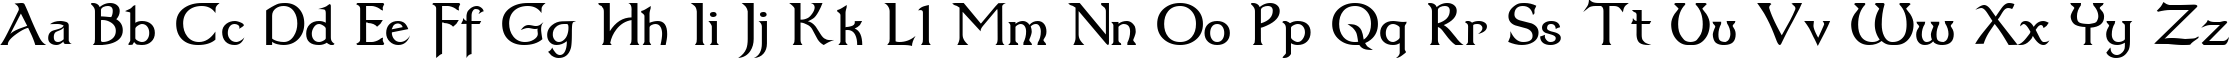 Пример написания английского алфавита шрифтом Dumbledor 3